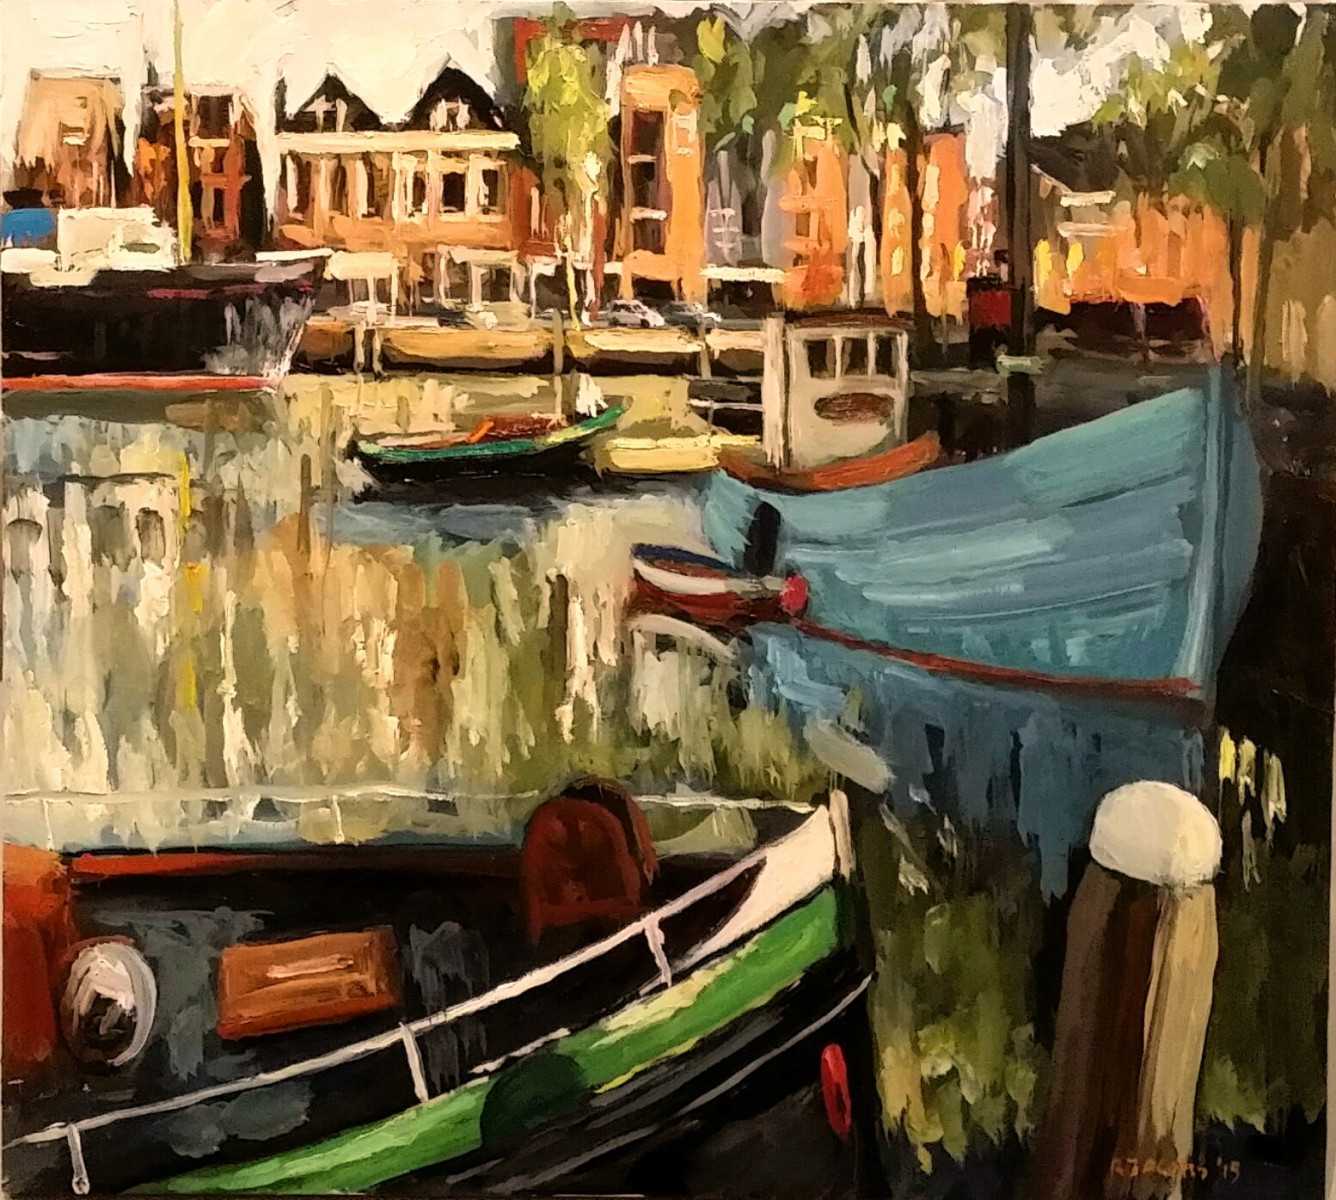 Rob Jacobs schildert doek van 514x414mm in de haven van Maassluis, Zuid-Holland op 10 oktober 2015.